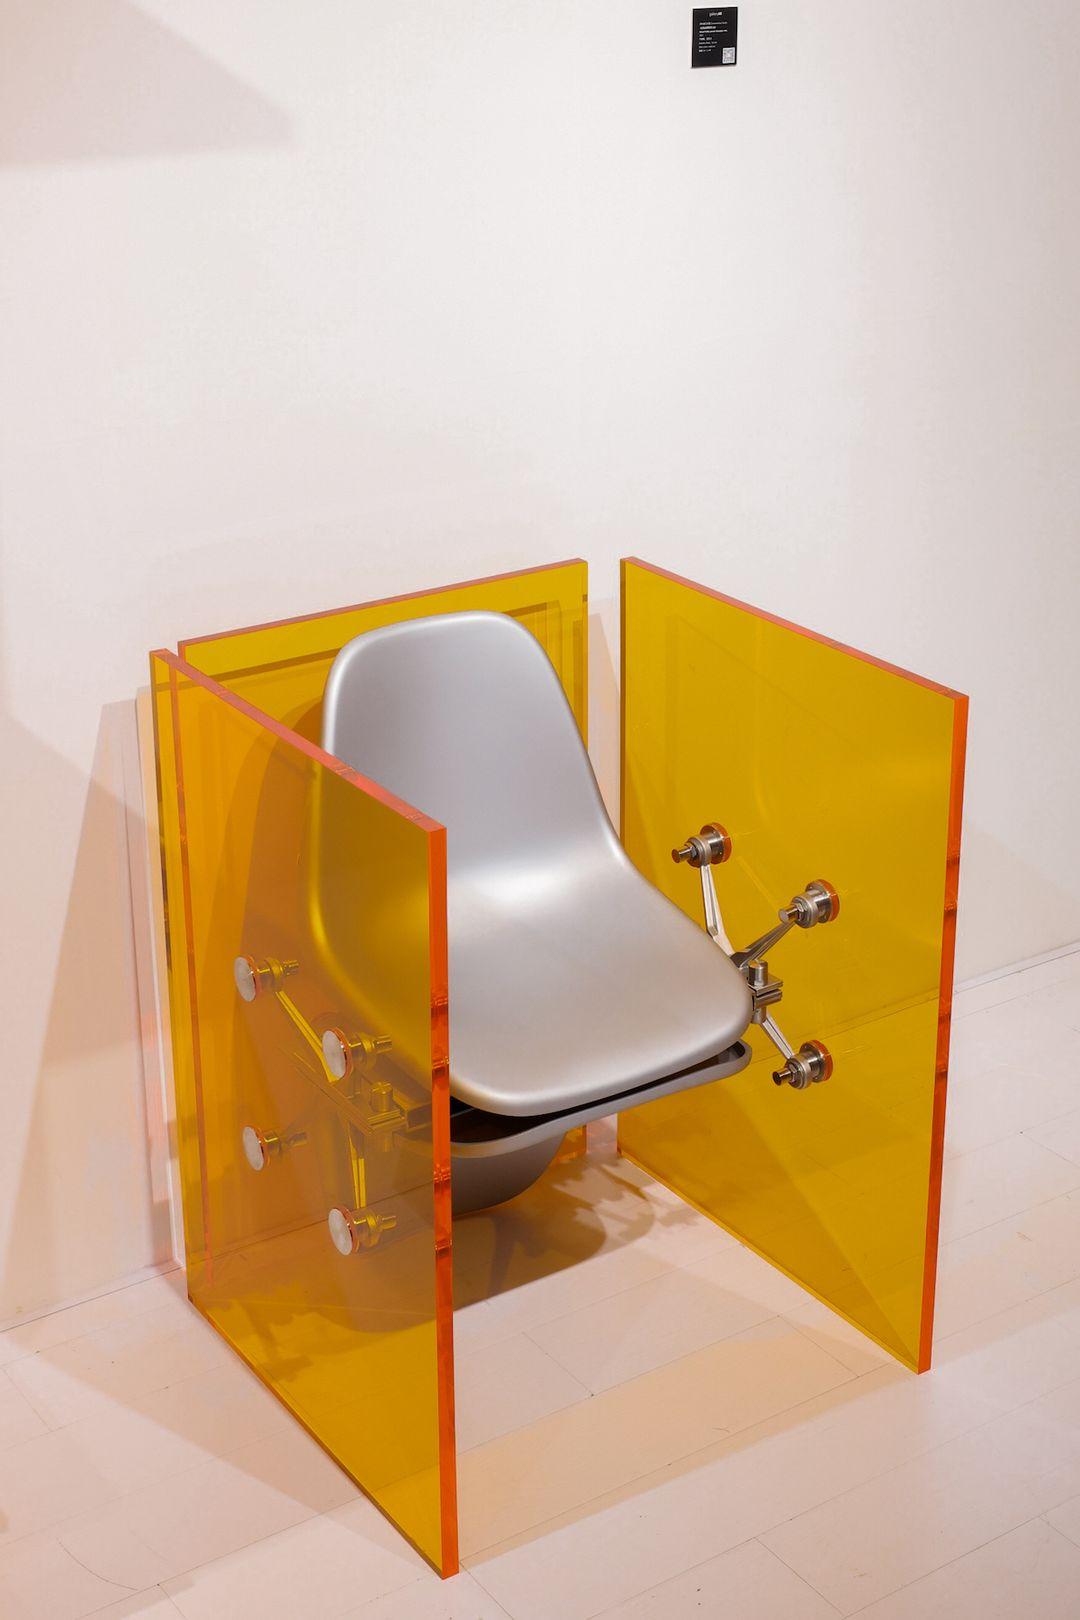 Chinois Chaise/table d'appoint orange « Boundary » mixte public-private n°03 de Cometabolism Studio en vente